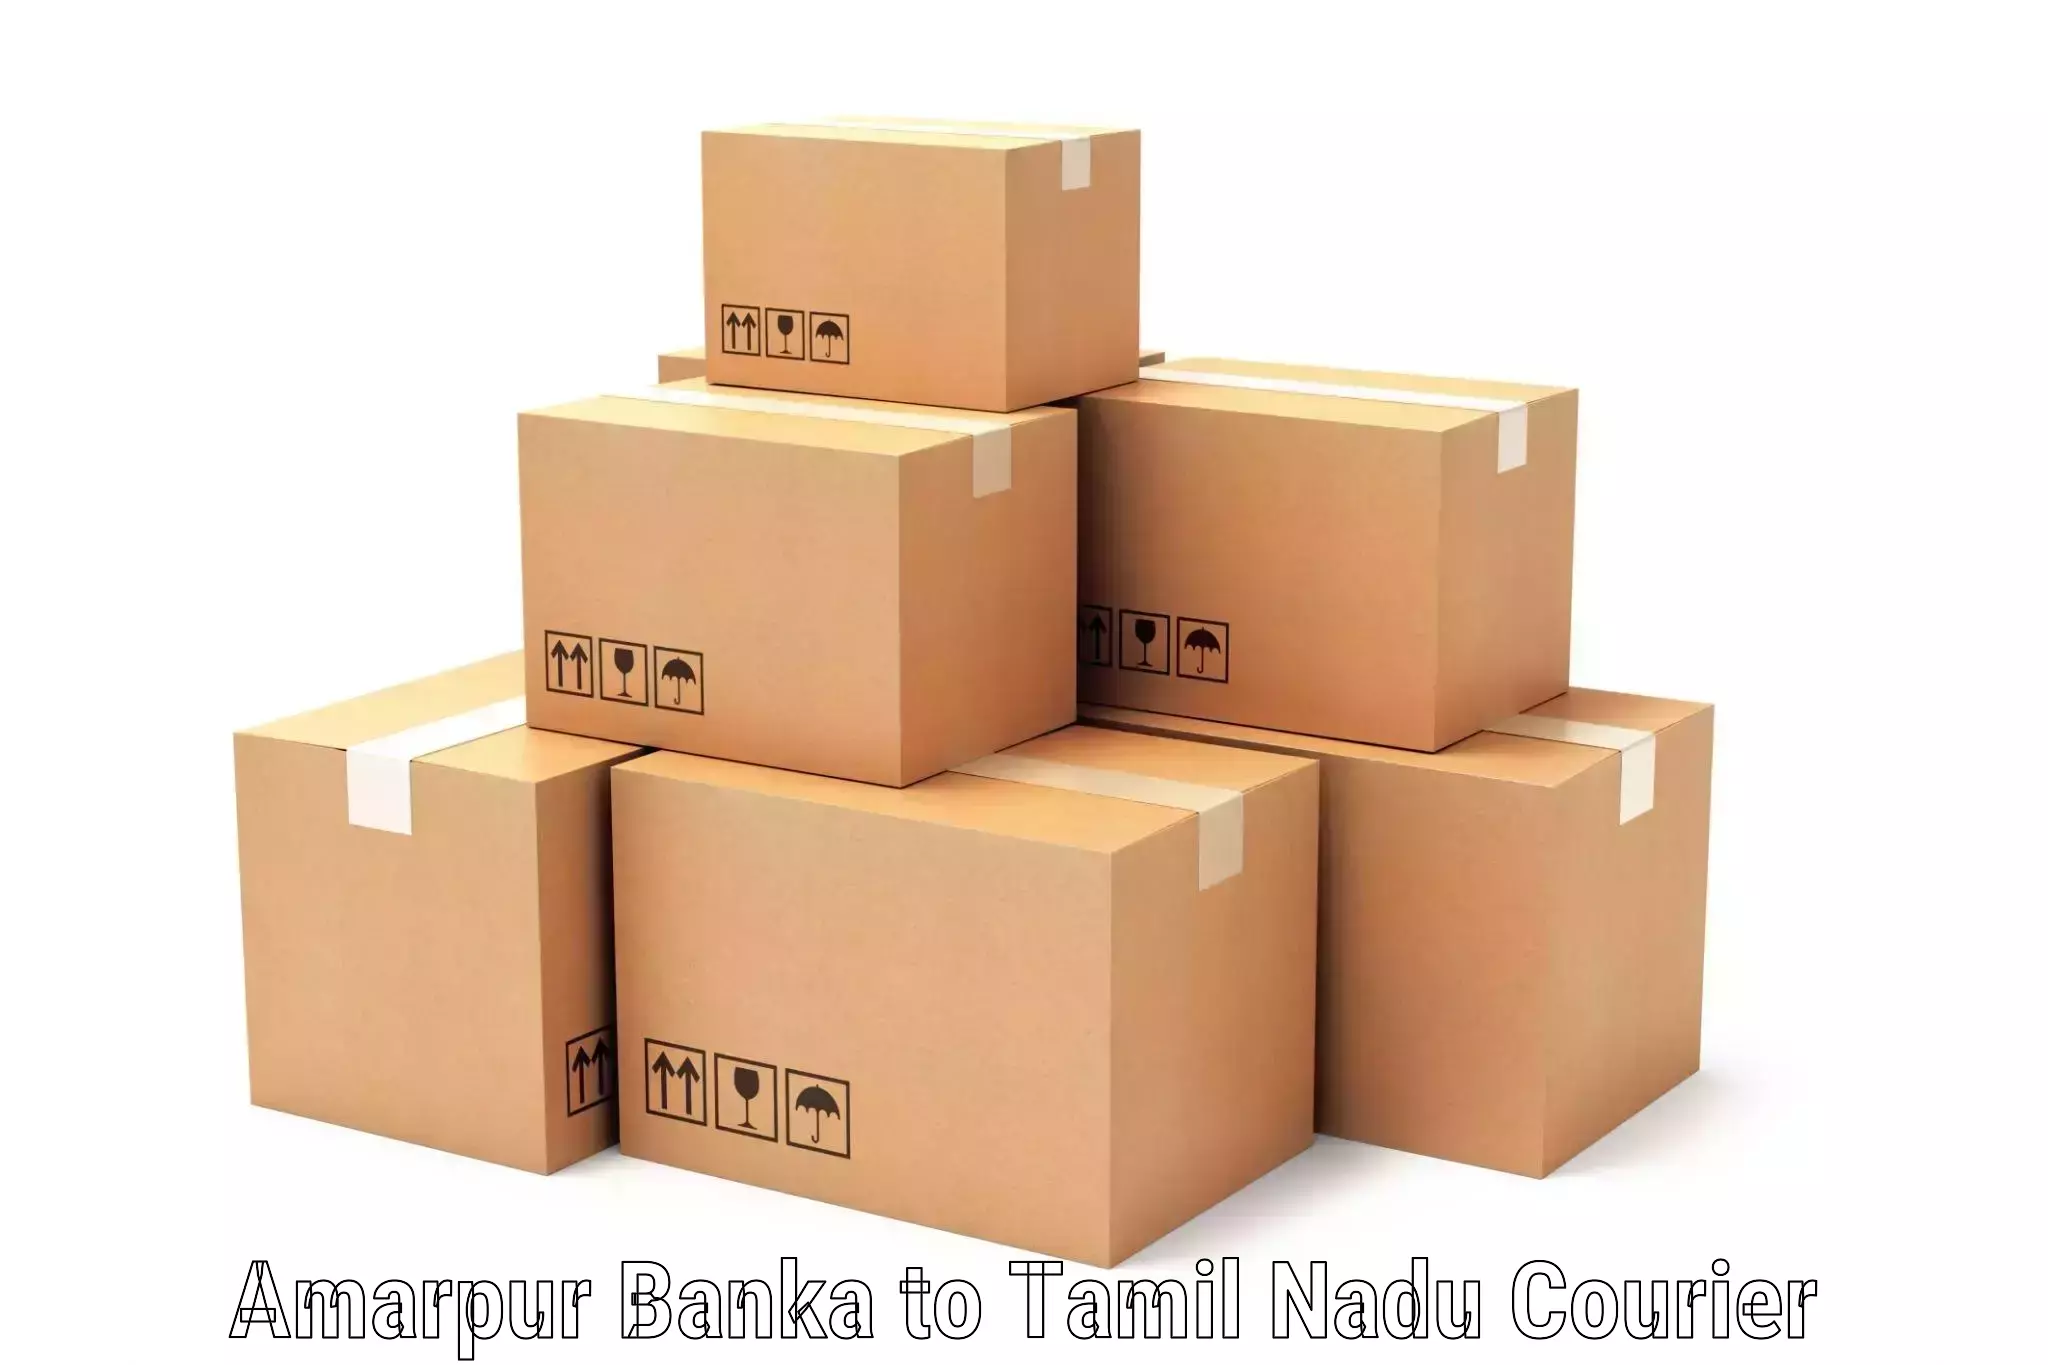 Efficient parcel service Amarpur Banka to Chetpet